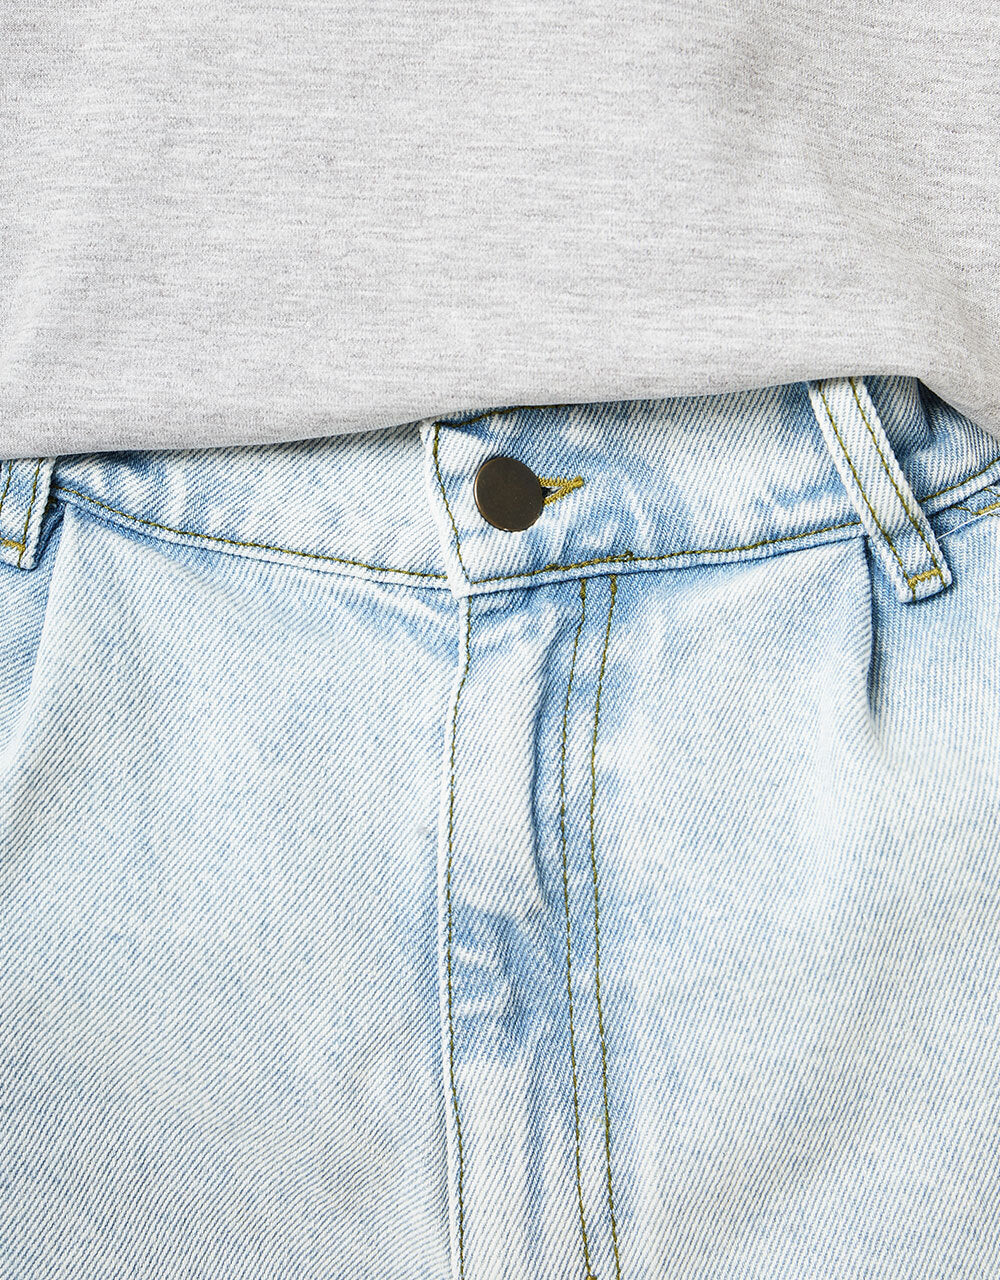 Magenta OG Denim Pocket Long Shorts - Ultrawashed Denim